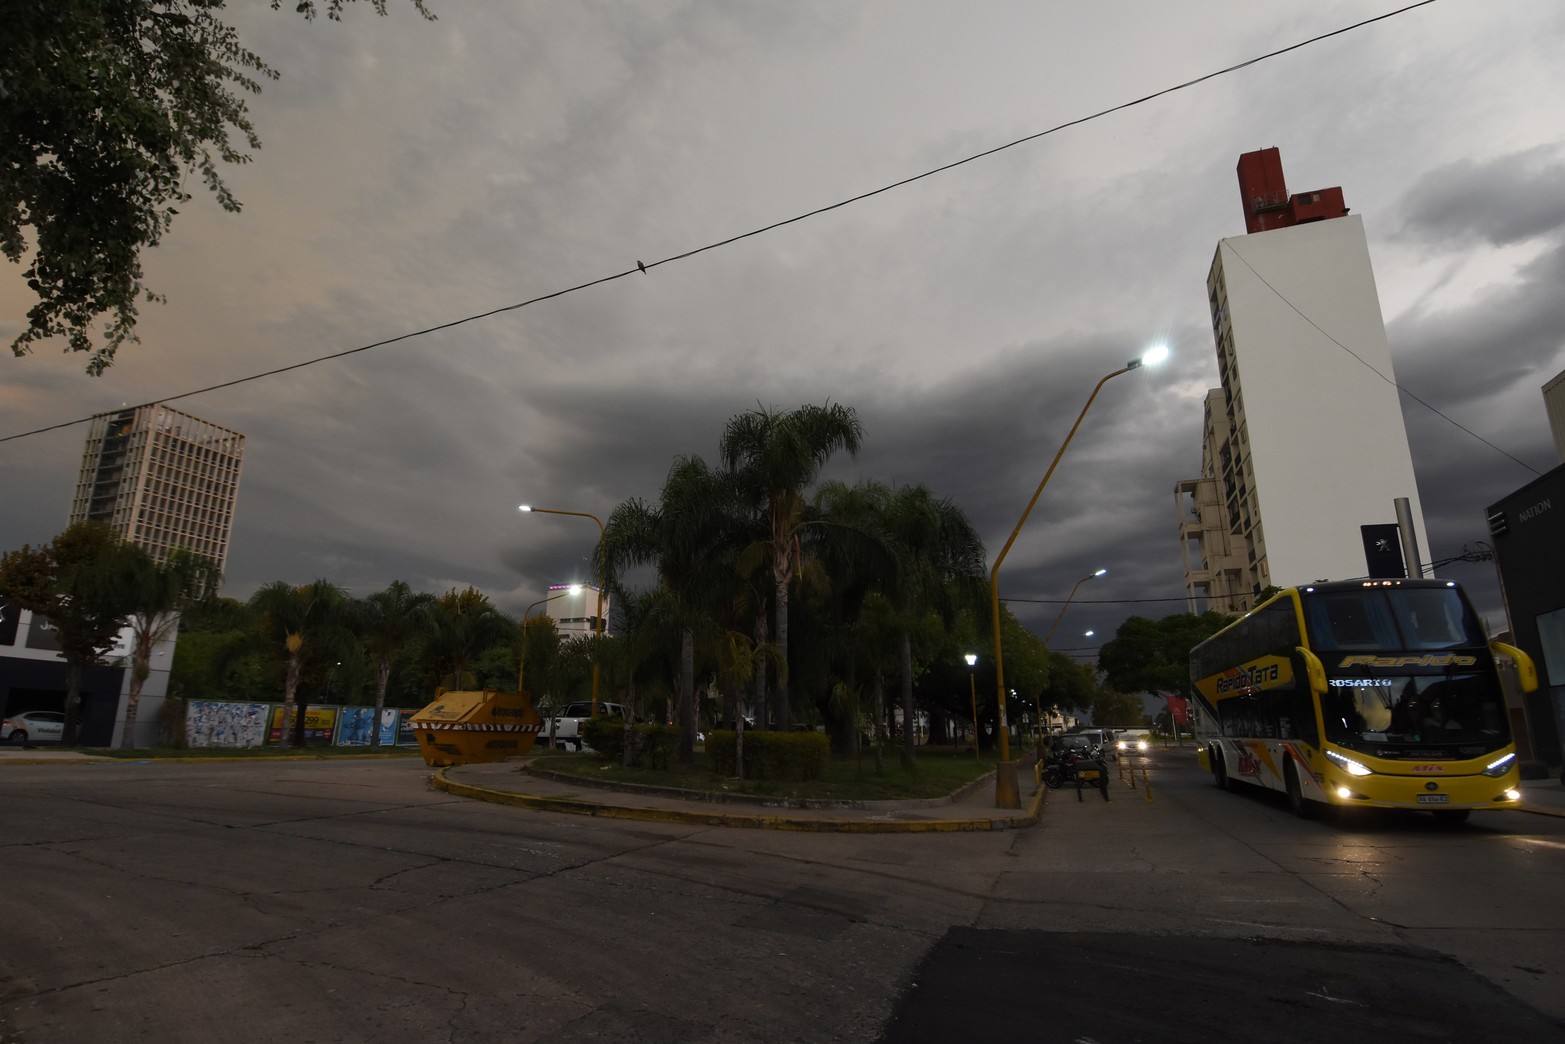 ¡Se viene una tormenta! La imagen tomada en Belgrano y Eva Perón.  Fotos : Eduardo Edmundo Seval